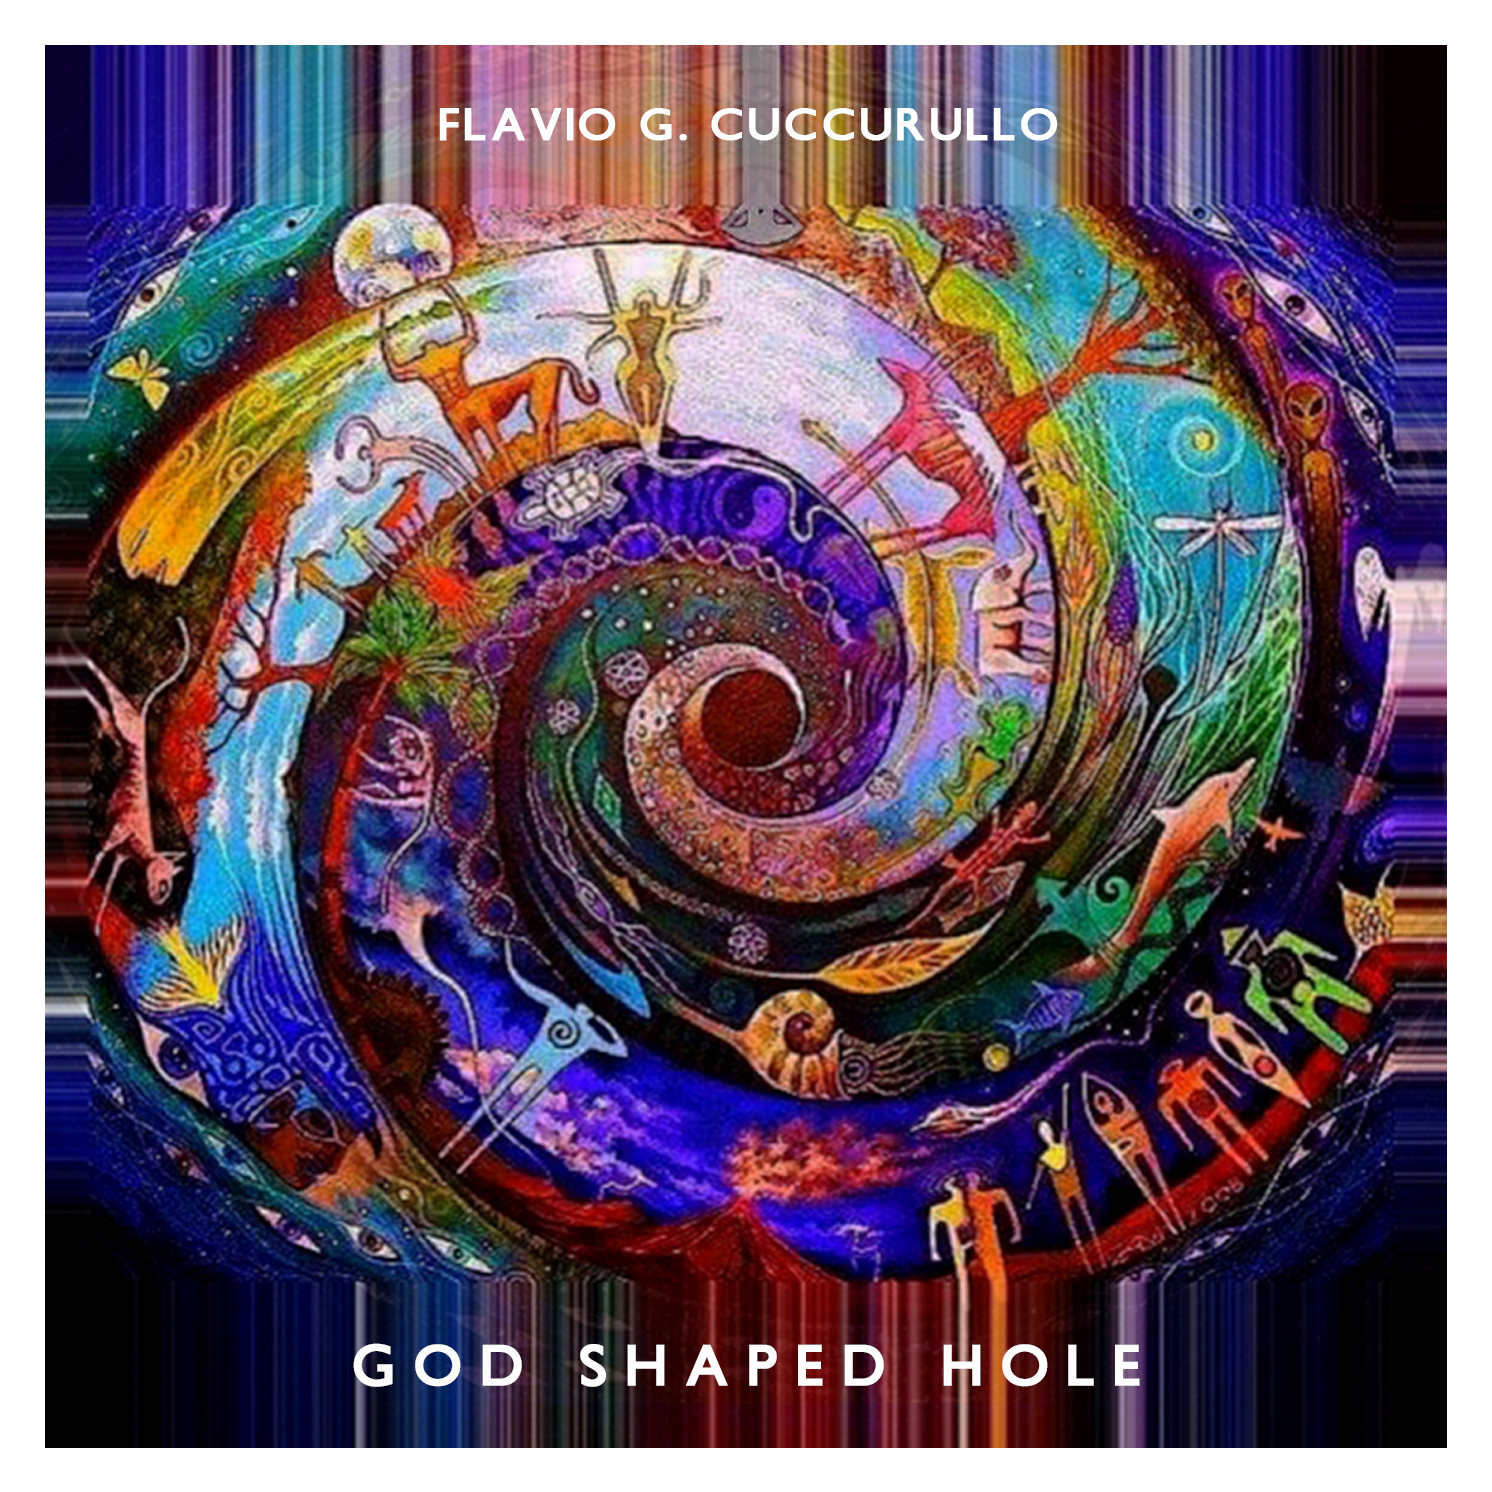 Flavio G. Cuccurullo – “God Shaped Hole”